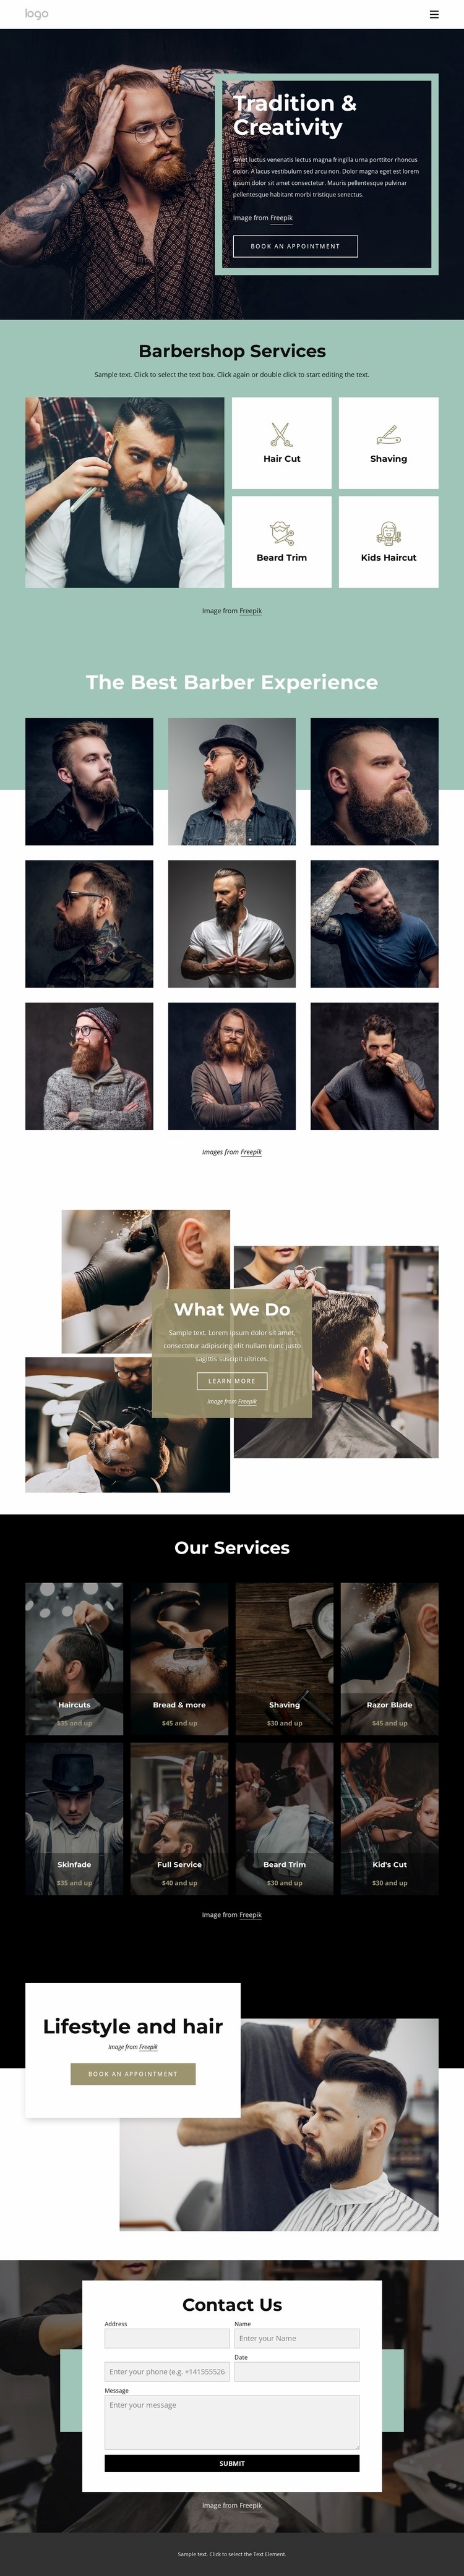 Public barber salon Wix Template Alternative